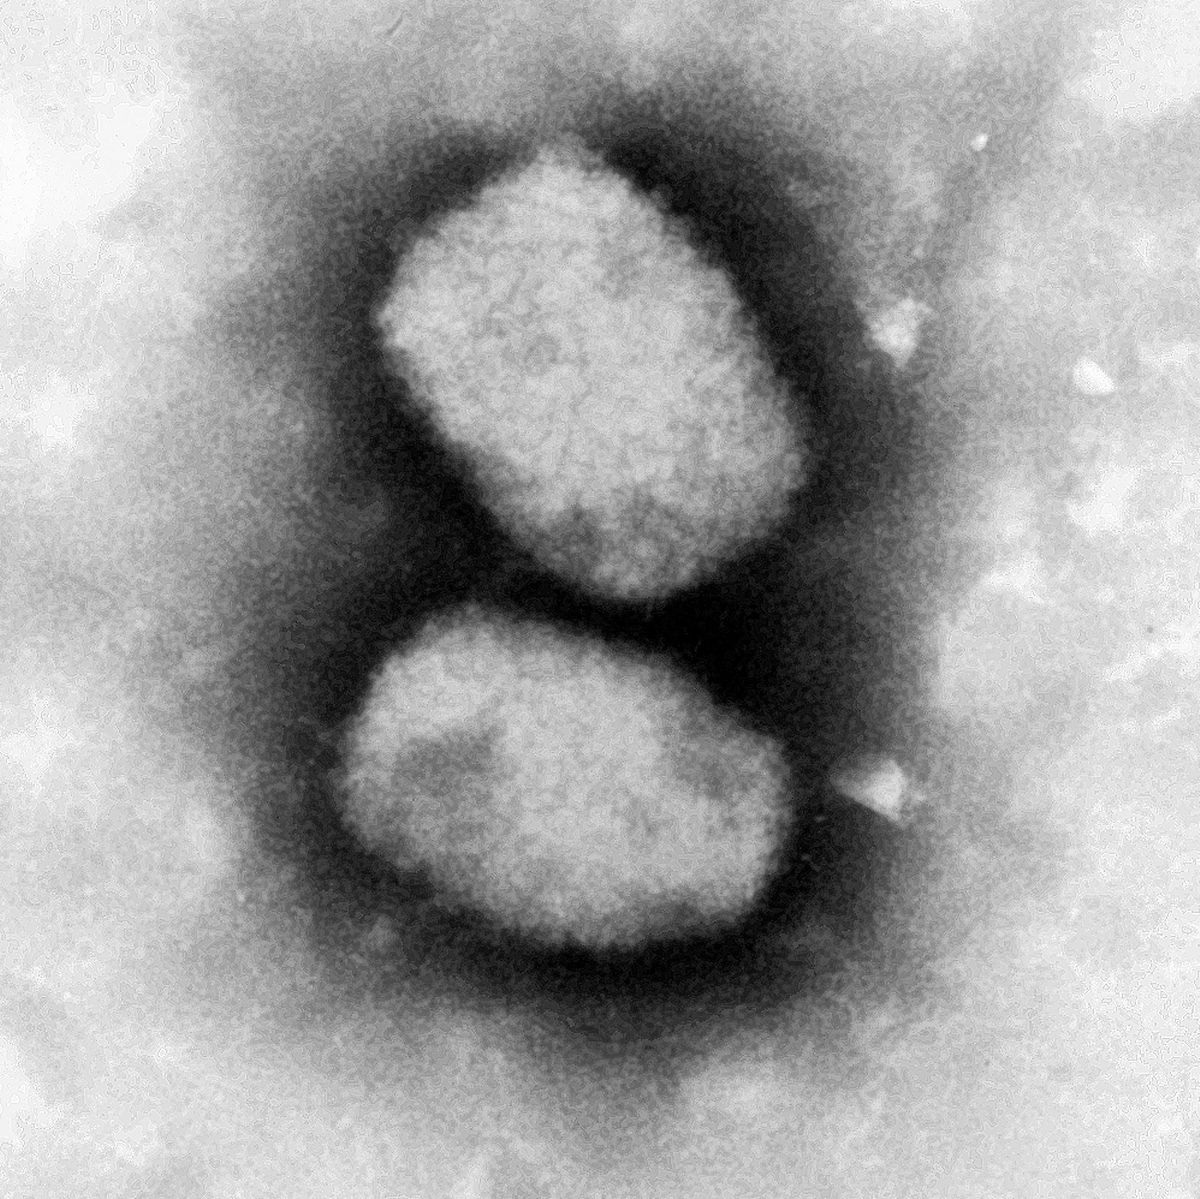 Diese vom Robert Koch-Institut (RKI) zur Verfügung gestellte elektronenmikroskopische Aufnahme zeigt das Affenpockenvirus. 